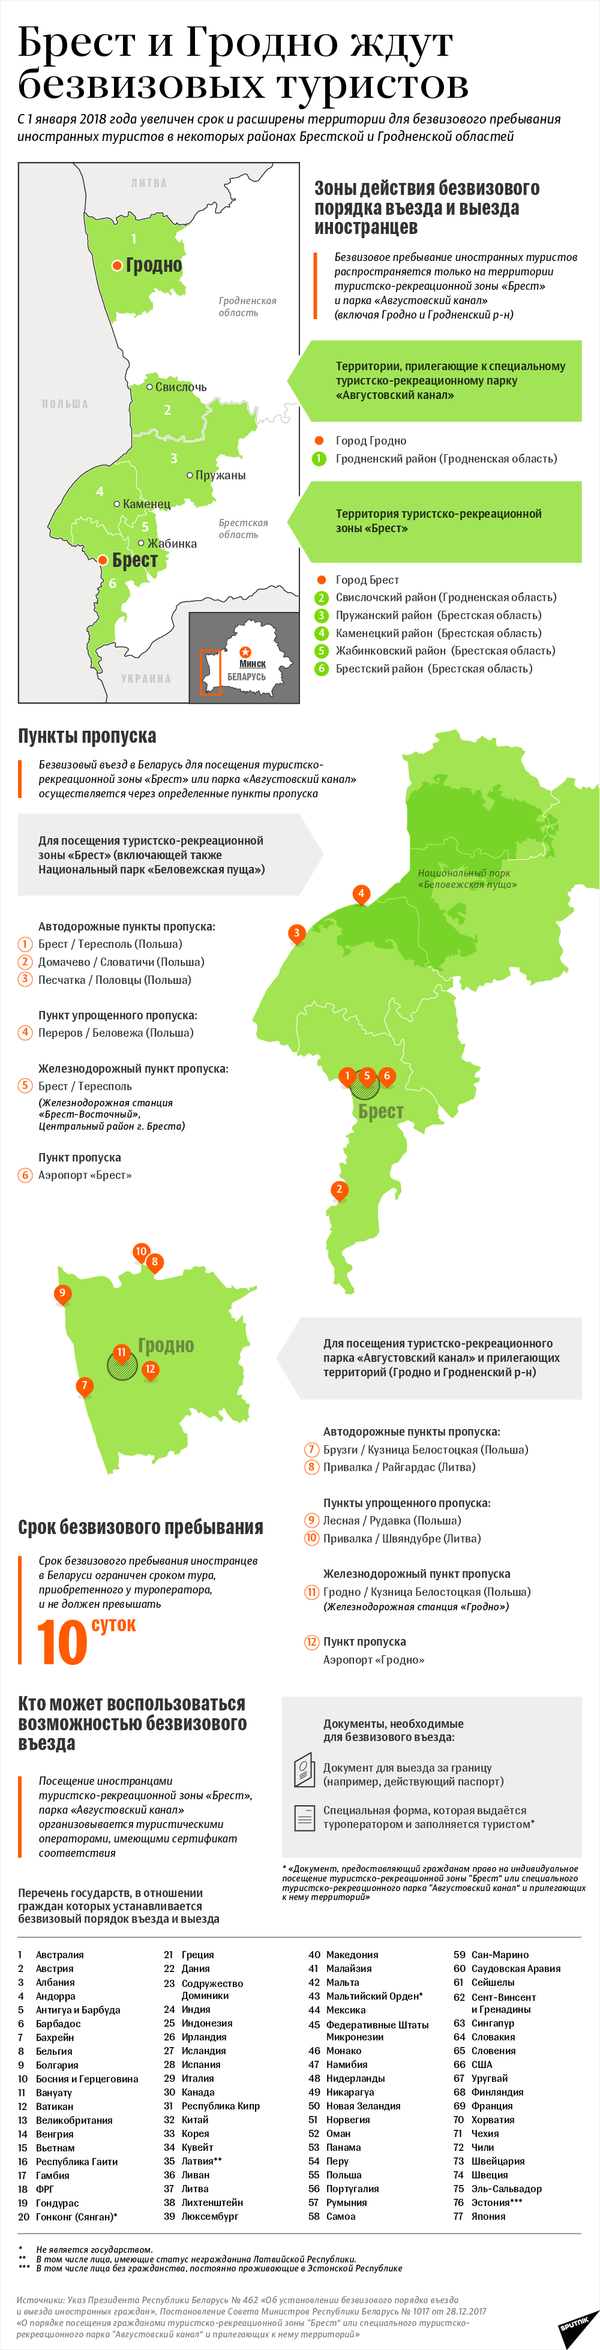 Безвизовый режим для иностранцев в Брестской и Гродненской областях – инфографика на sputnik.by - Sputnik Беларусь